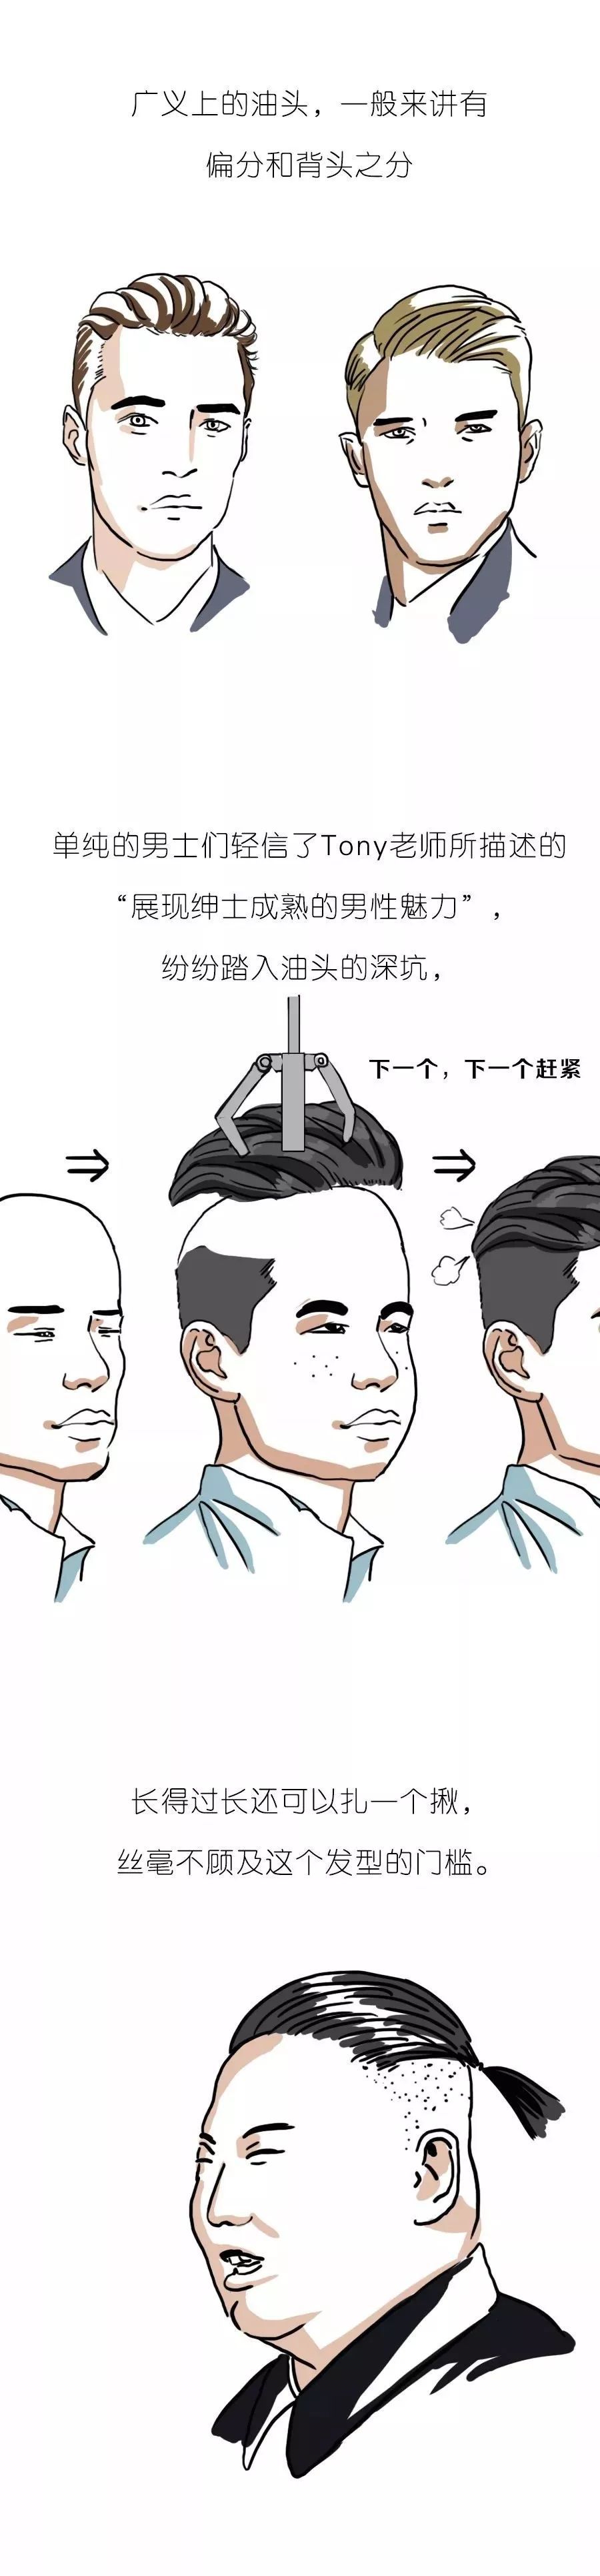 当代中国男子发型图鉴 男性